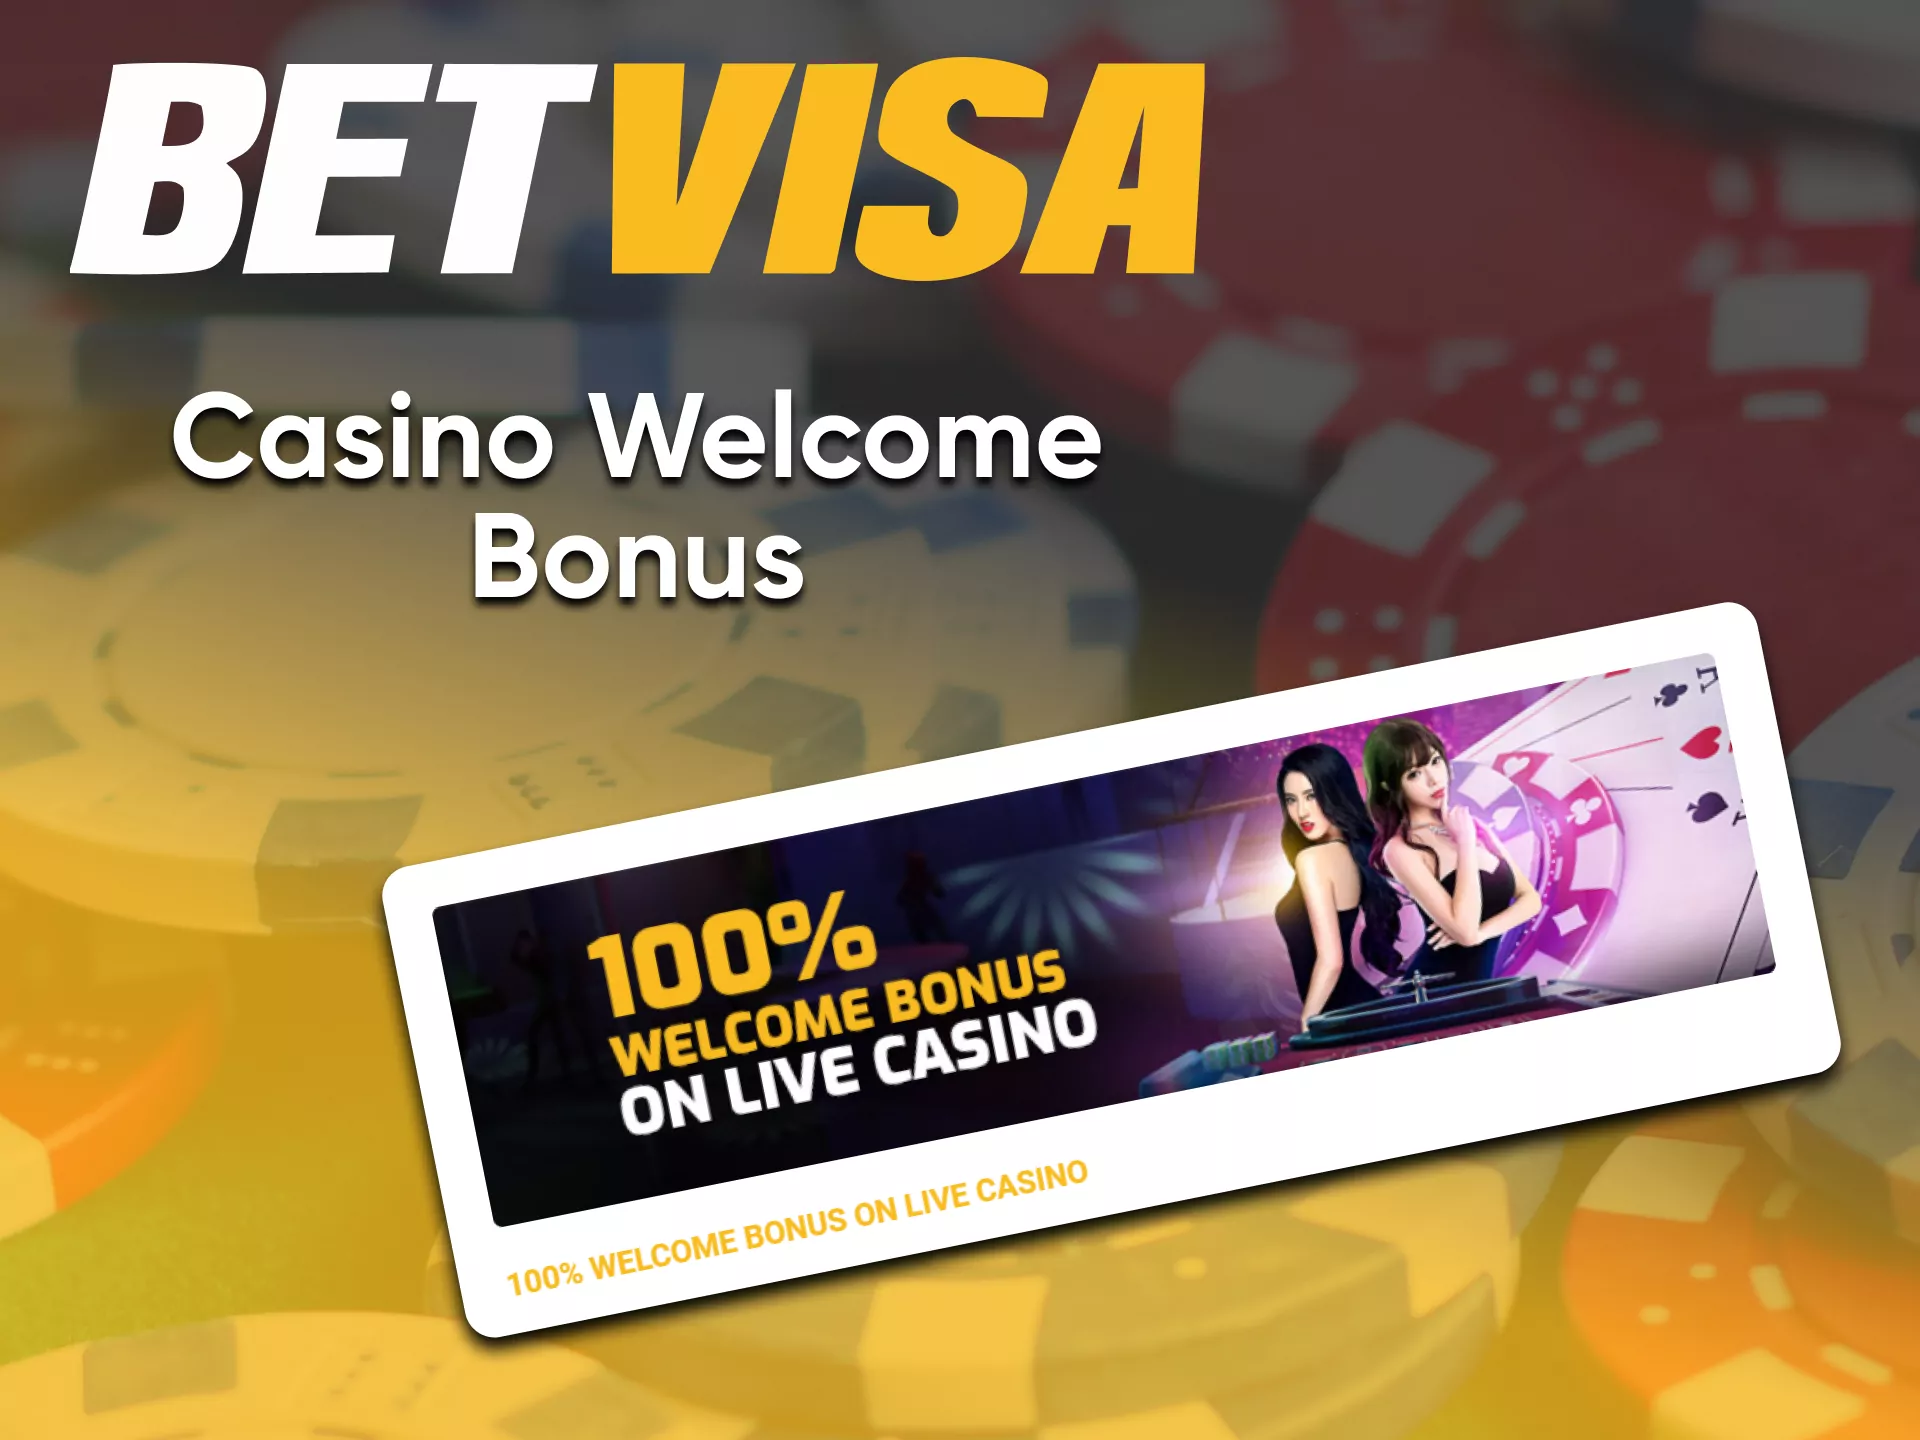 Play at BetVisa casino and get a bonus.